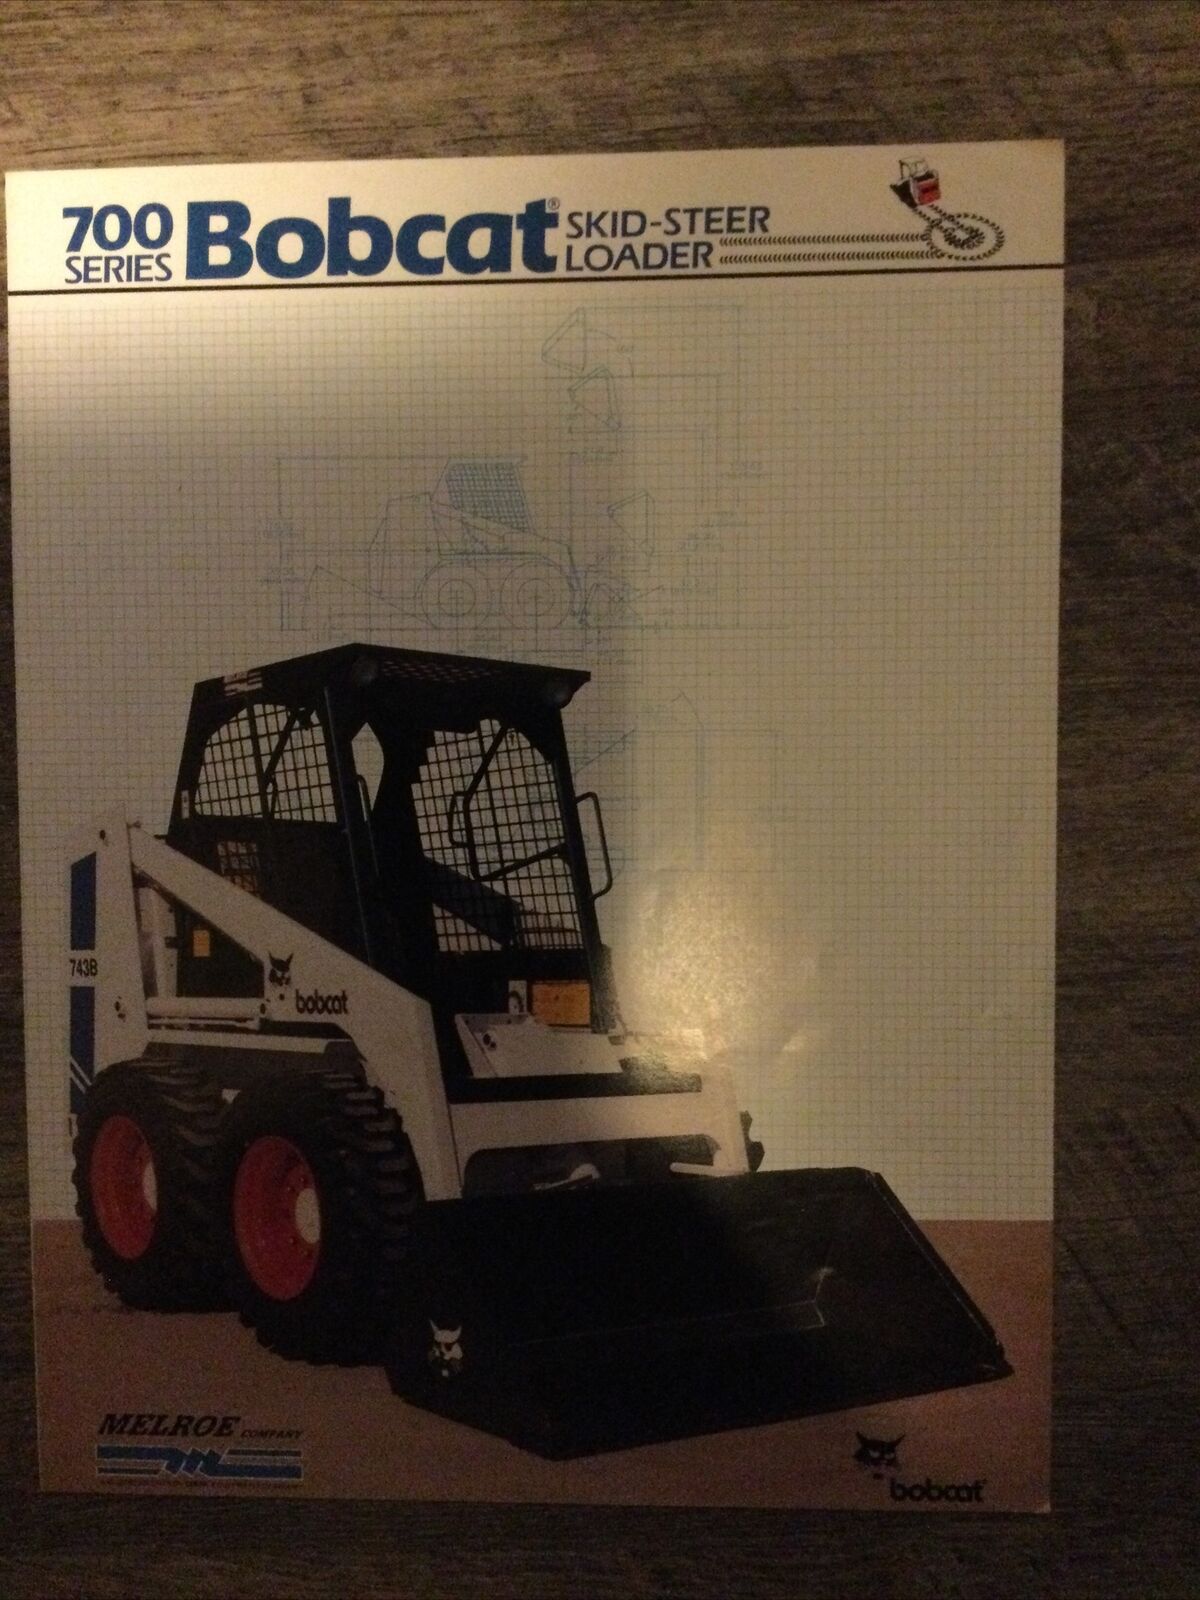 Bobcat 700 series Skid-steer Loaders 742 & 743B brochure